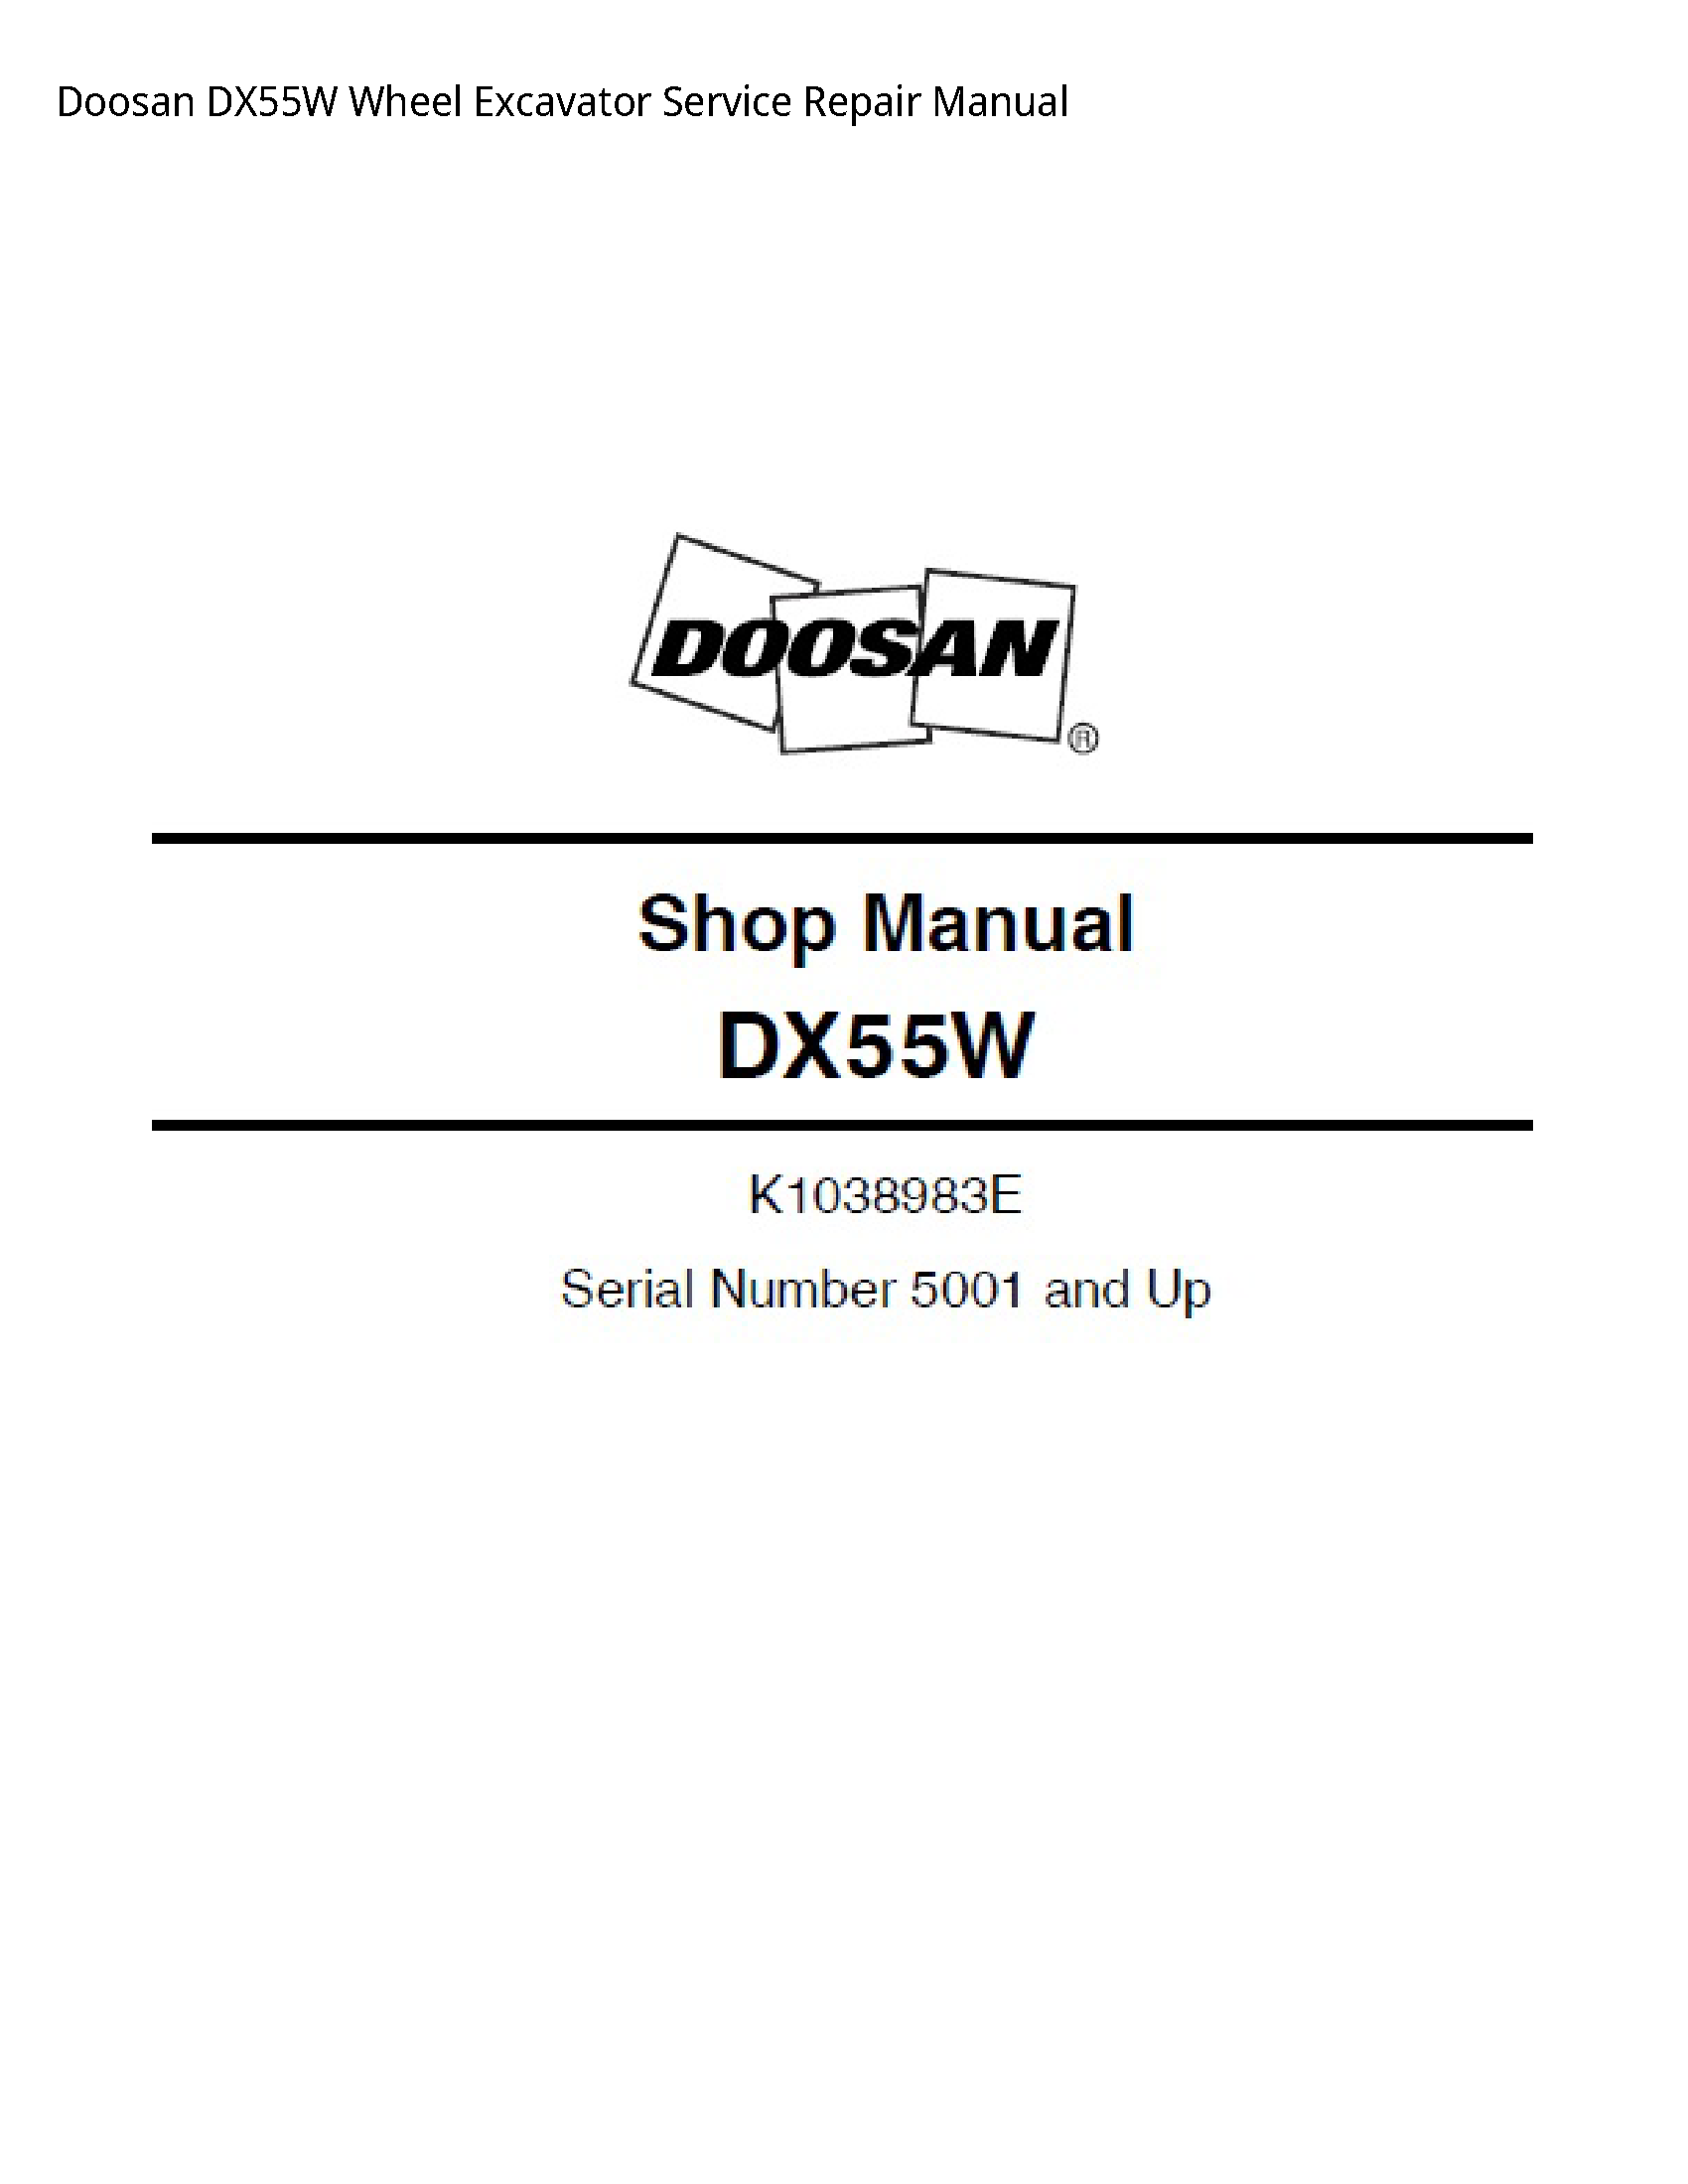 Doosan DX55W Wheel Excavator manual